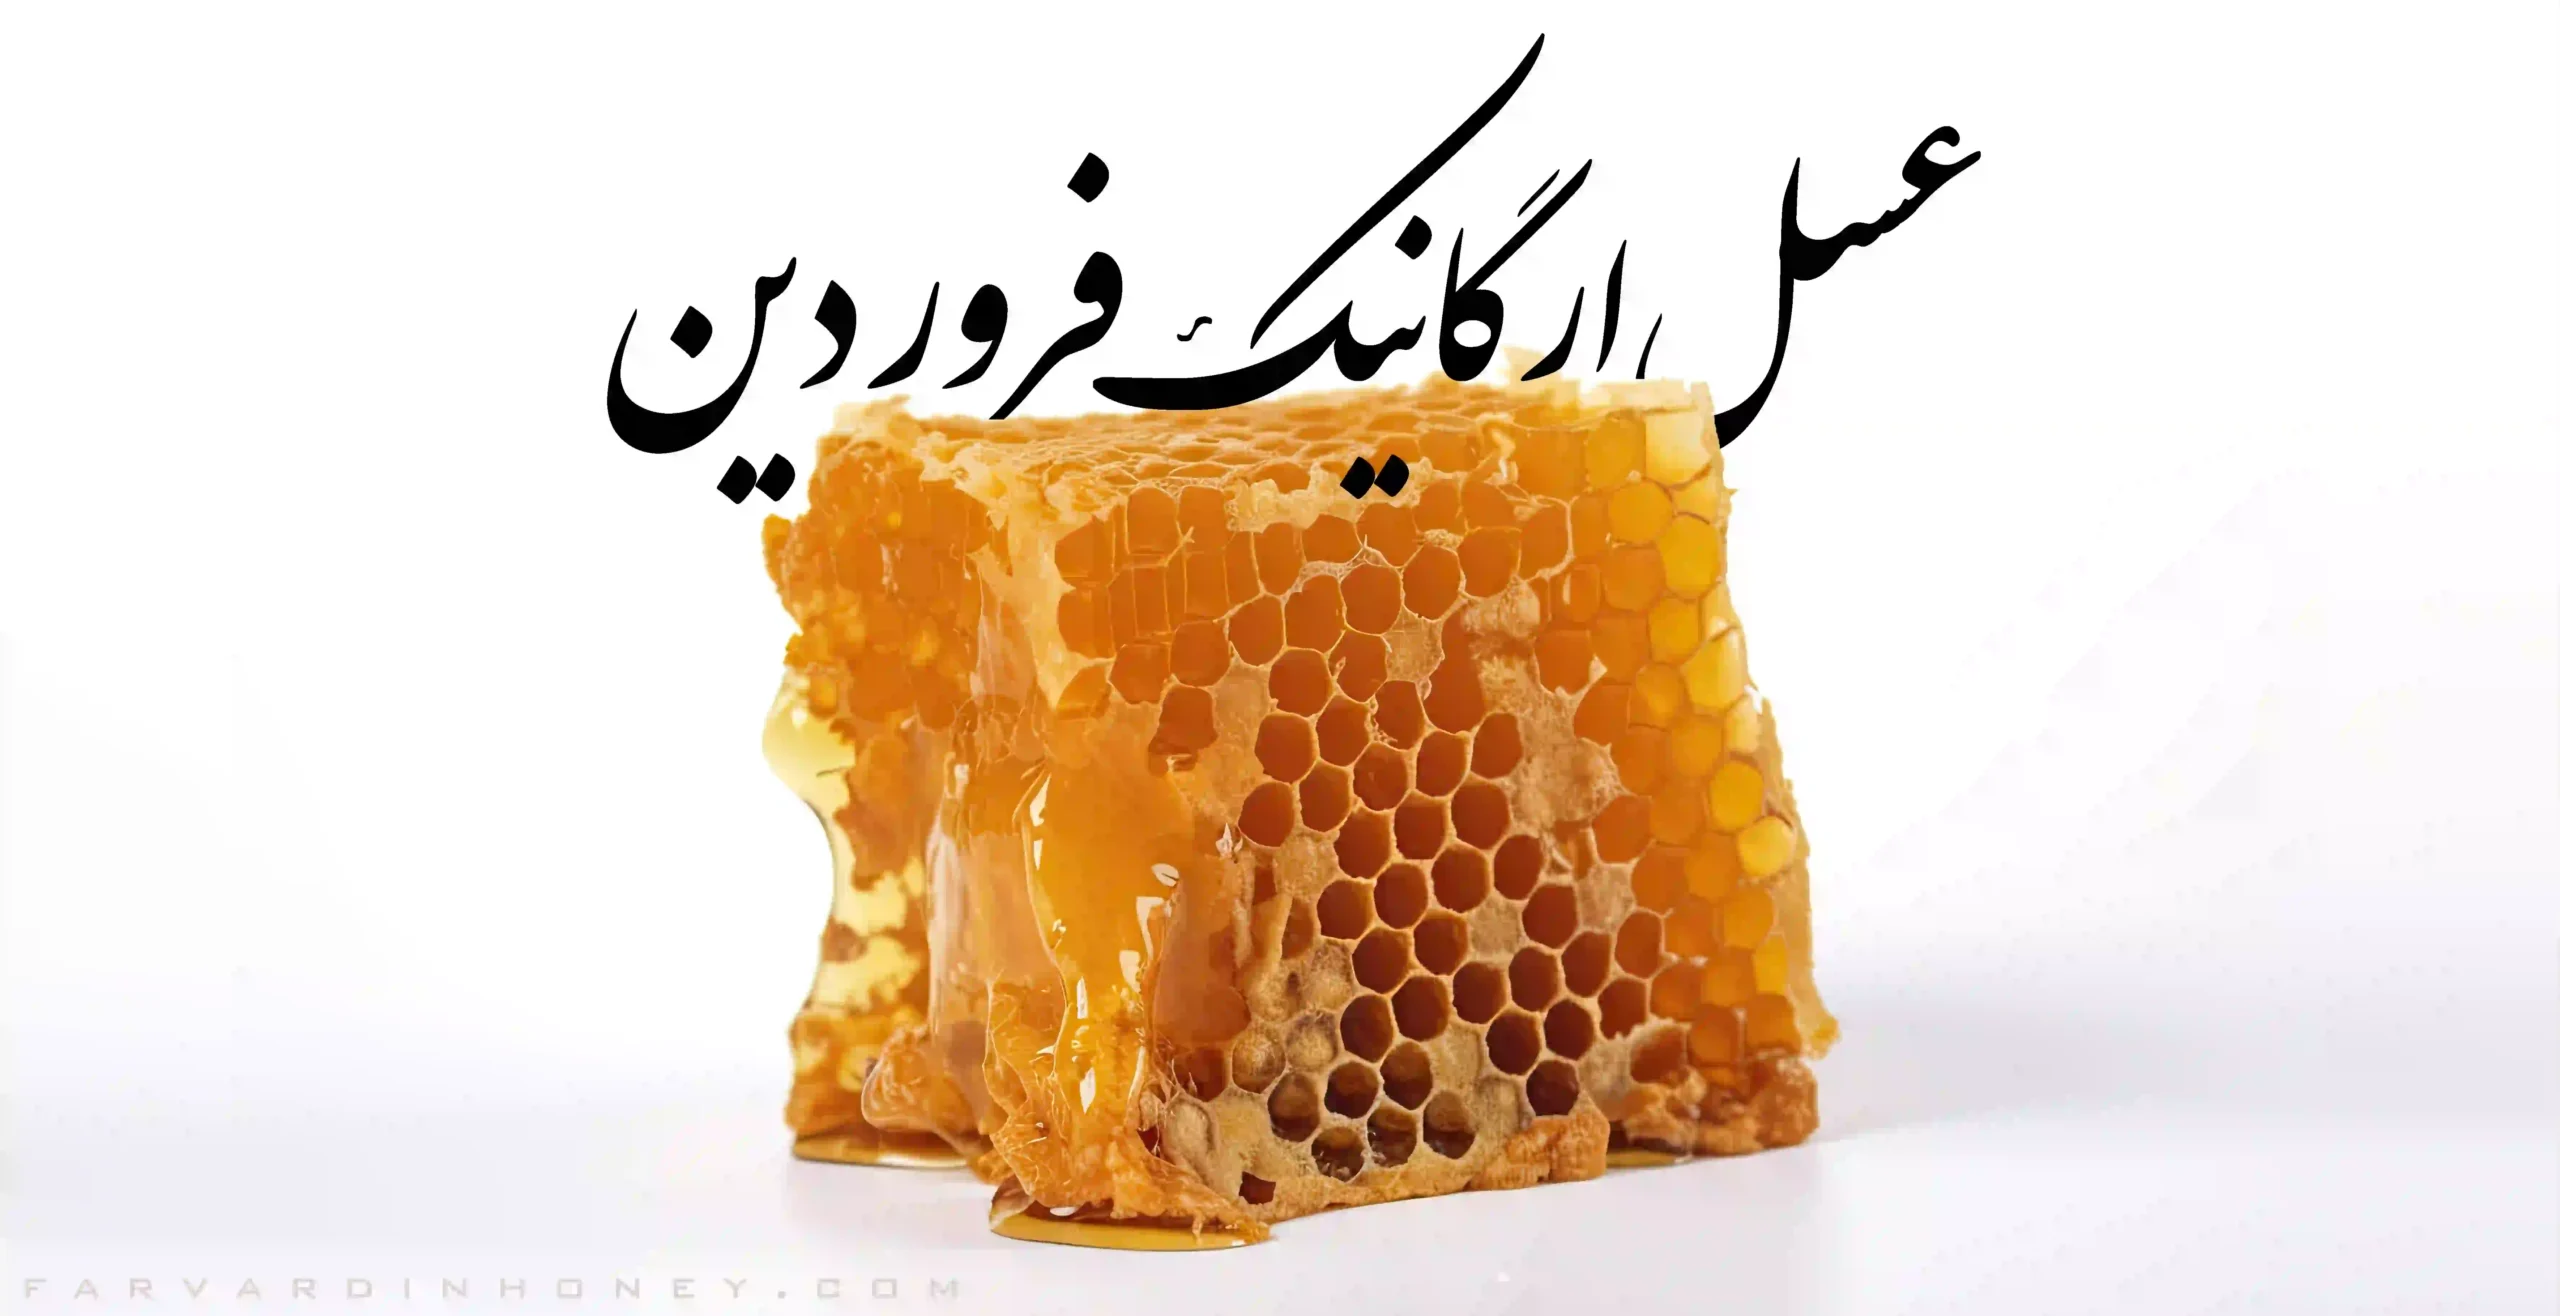 موم دار عسل مومدار عسل طبیعی با موم عسل طبیعی فروردین 2 scaled | دانشنامه و فروشگاه عسل طبیعی و خرید ژل رویال اصل | عسل فروردین